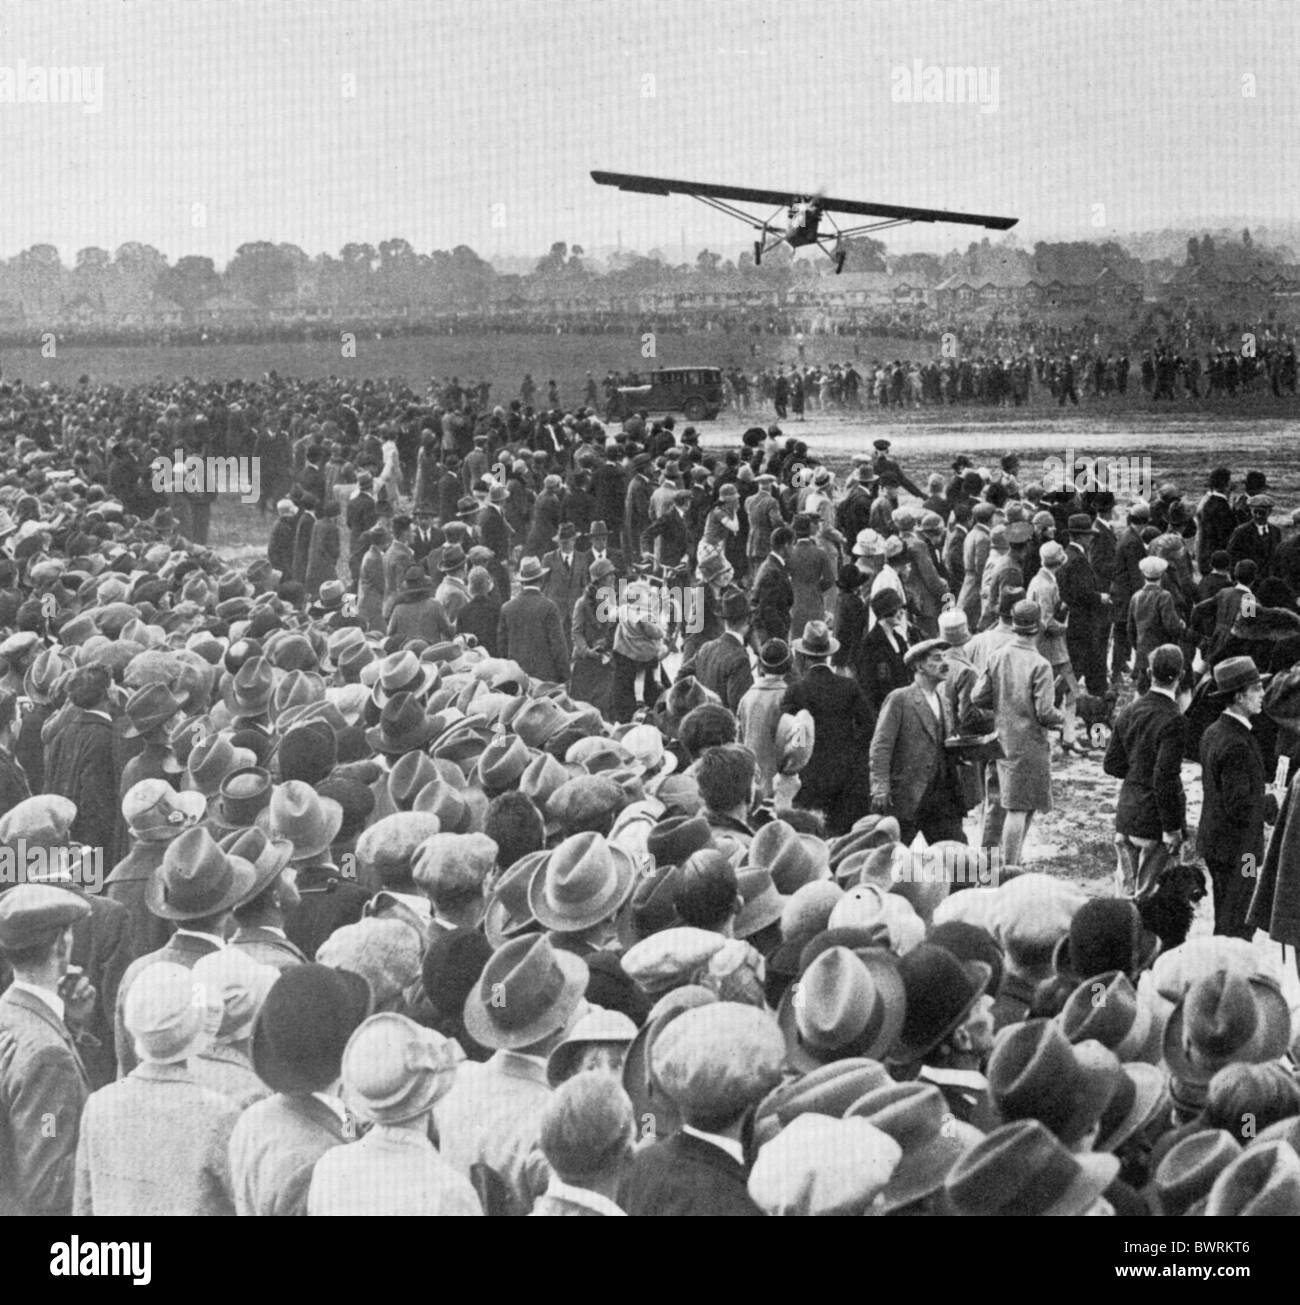 CHARLES LINDBERG arrive à l'aéroport de Croydon de Londres le 29 mai 1927 dans l'esprit de saint Louis - voir description ci-dessous Banque D'Images